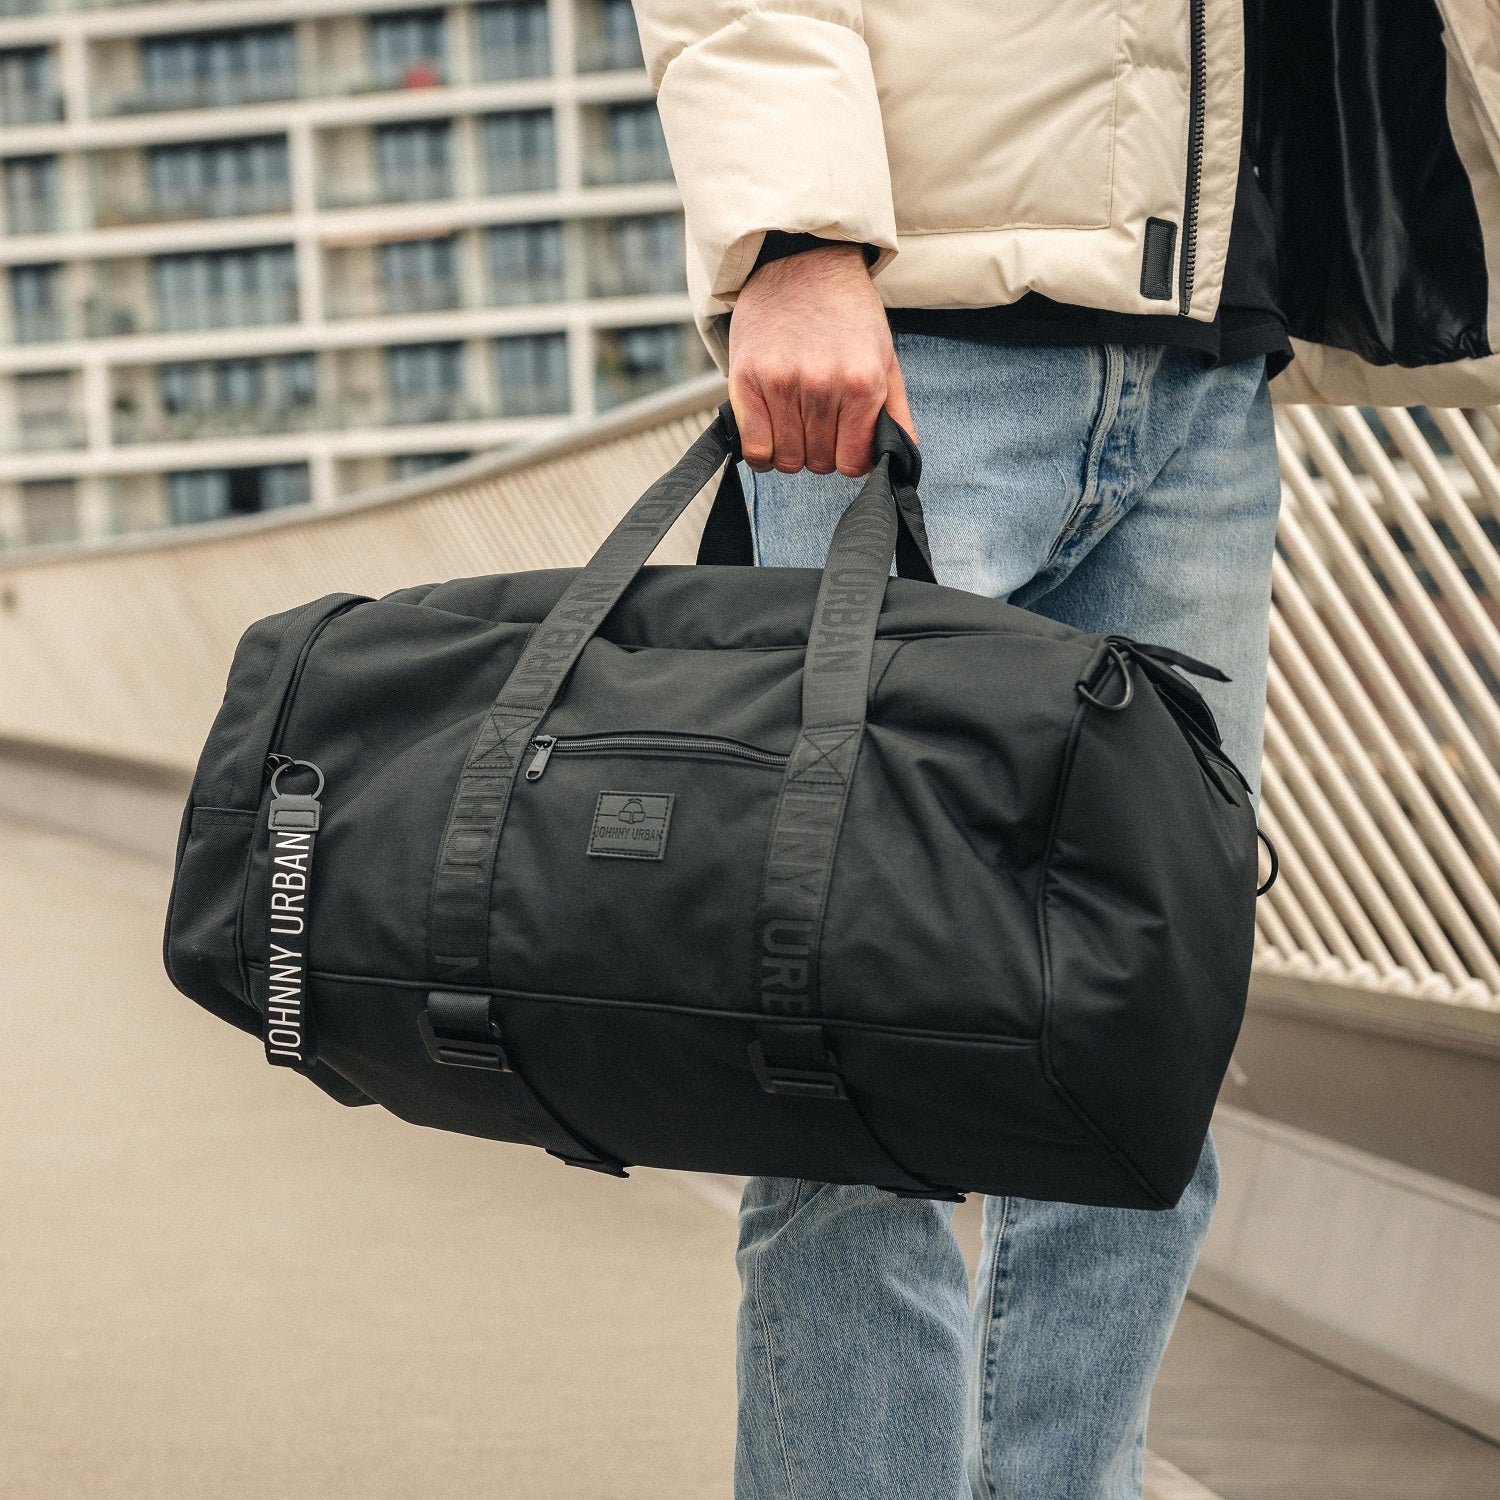 50/60/80L Large Capacity Laptop Backpack Shoulder Bag Luggage Bags Multiple  Pockets Adjustable Shoulder Straps Handbag Rucksack - AliExpress